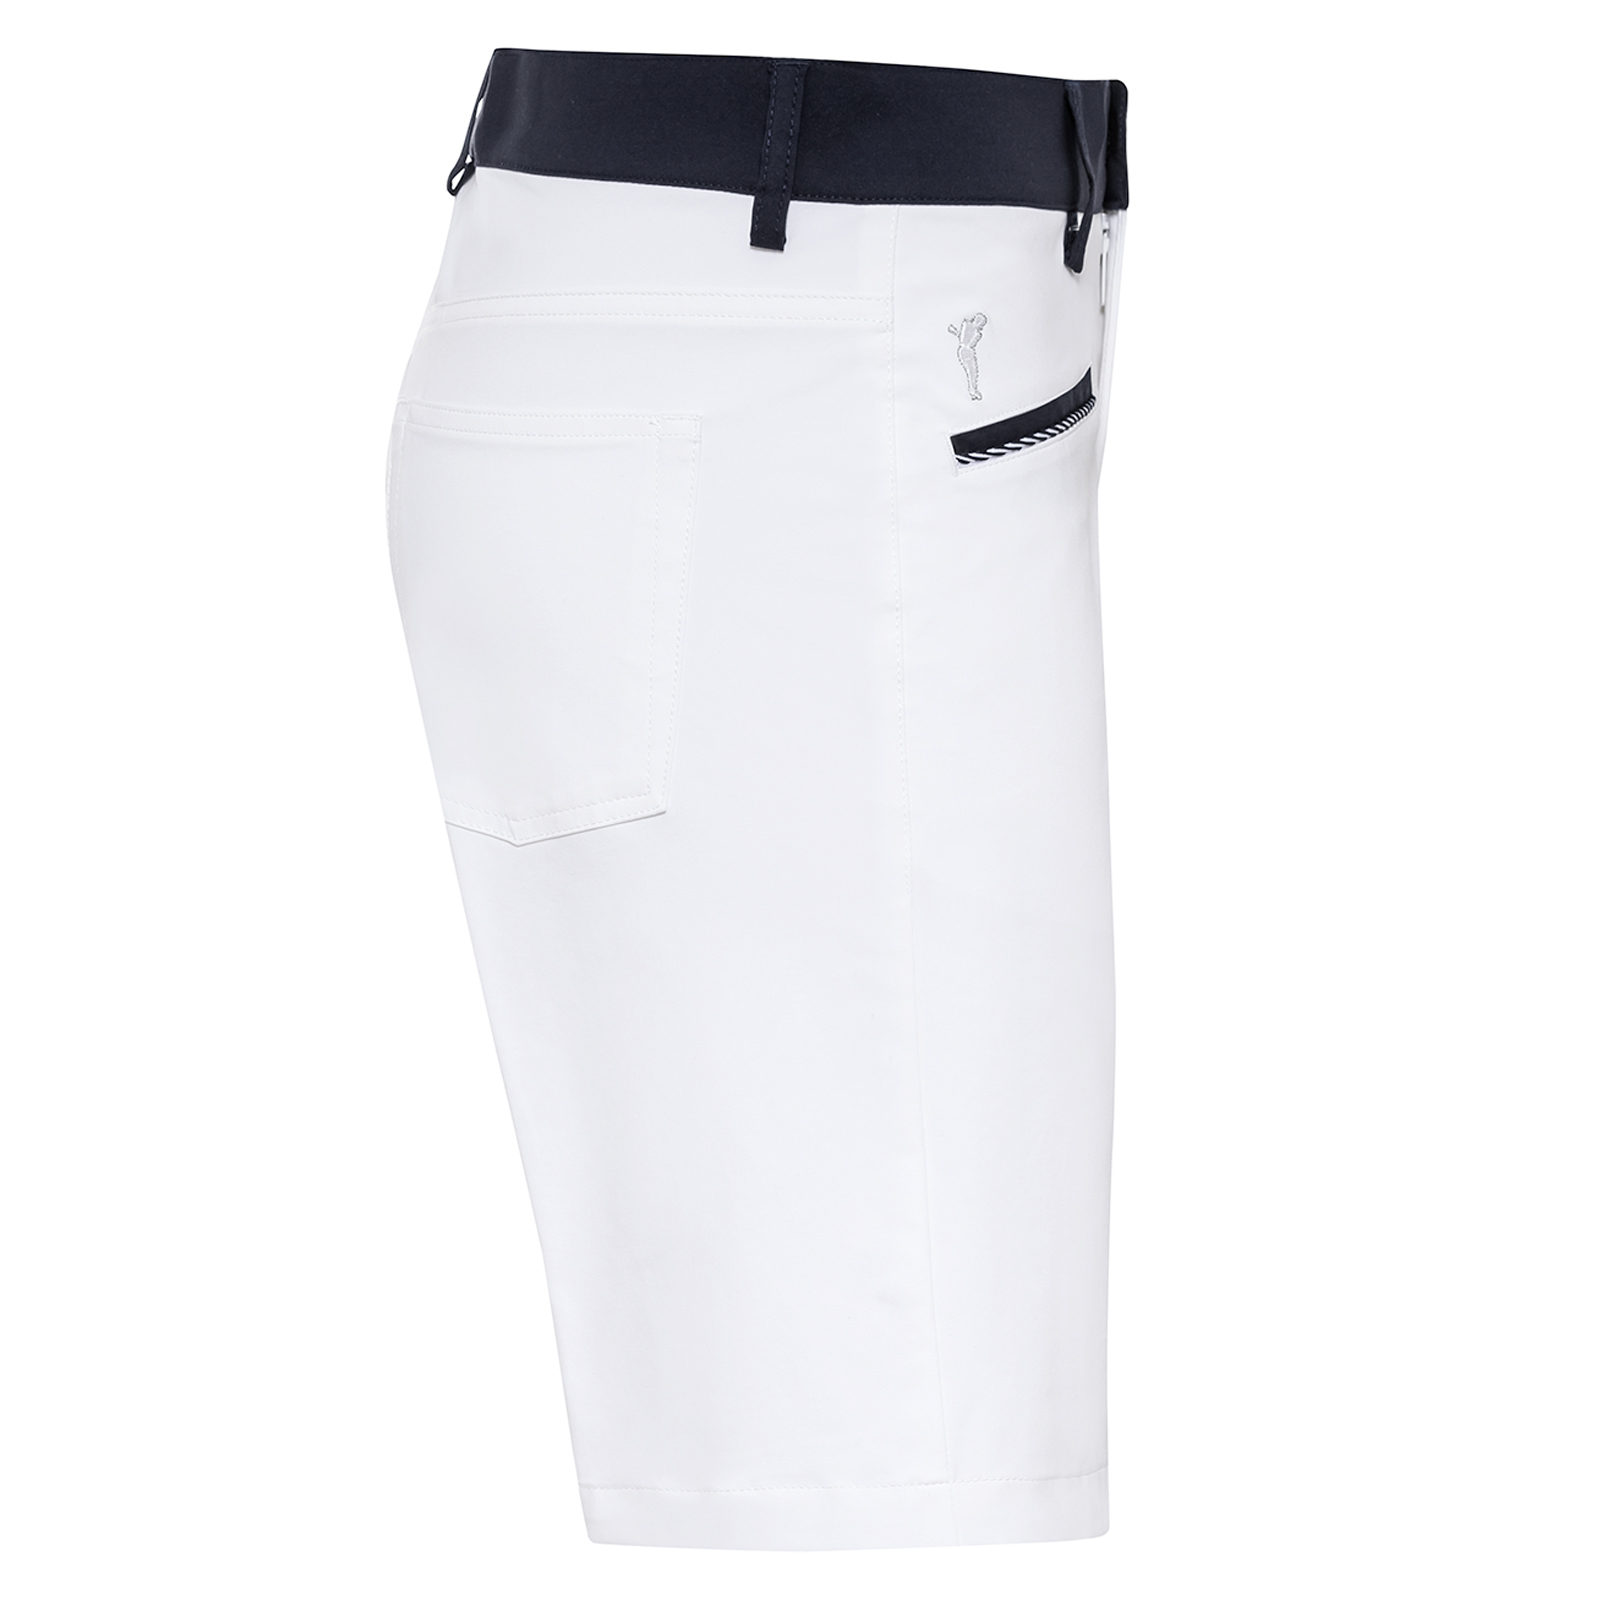 Dame-golfbermudashorts med ekstra stretchkomfort af eksklusiv bomuldsblanding